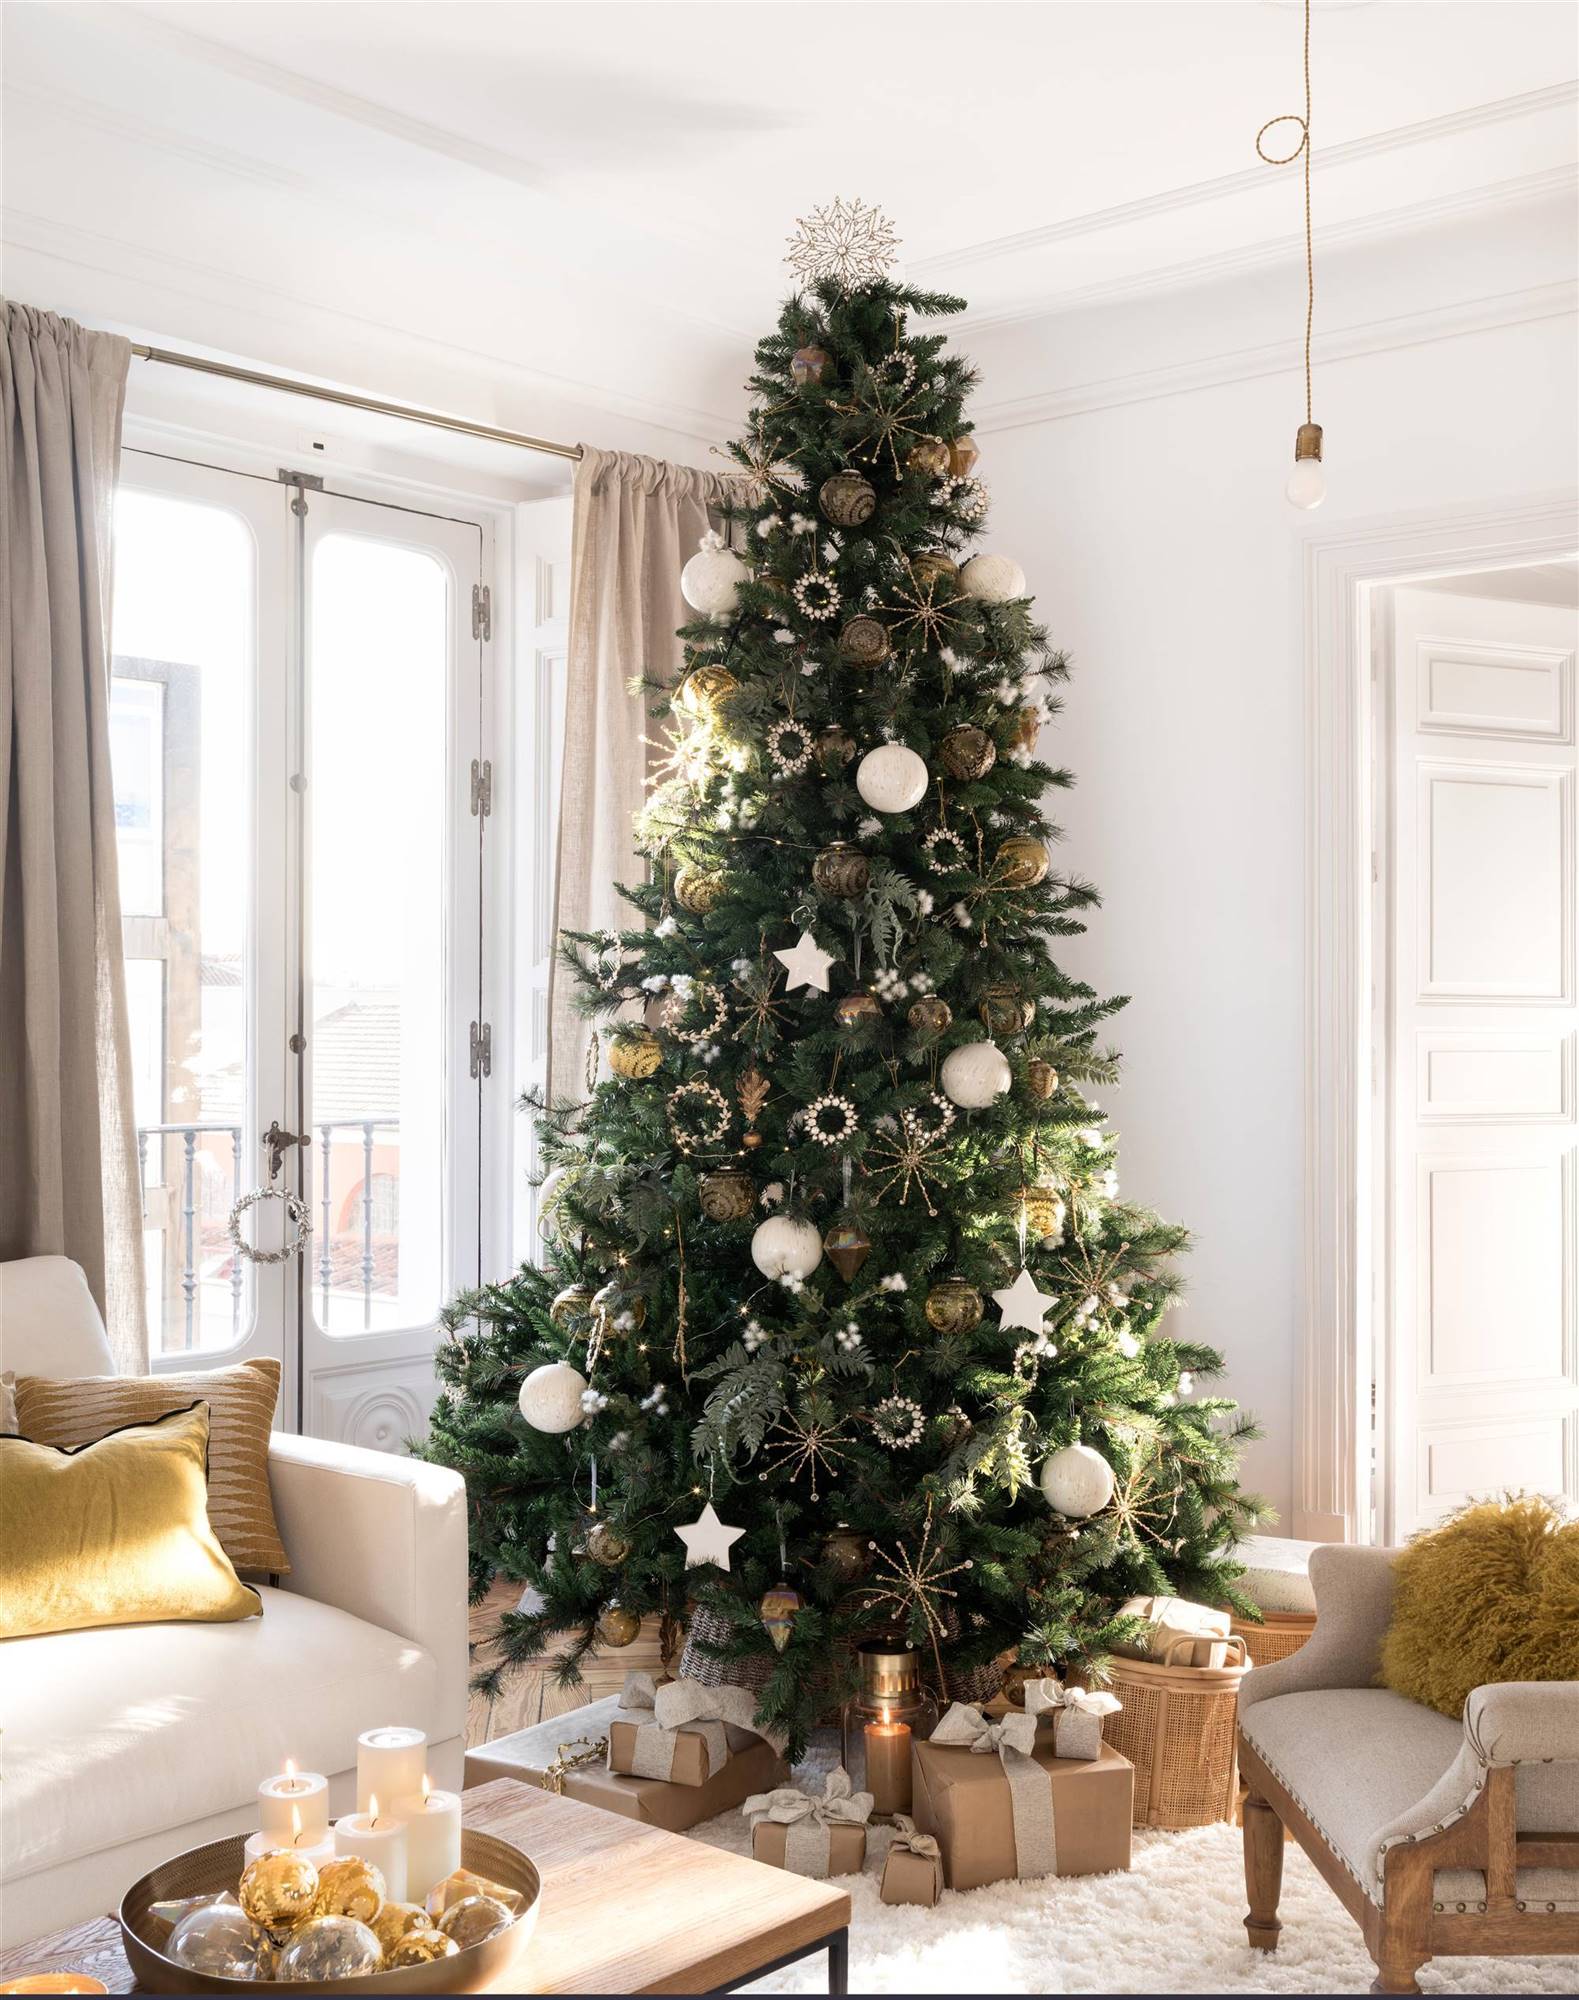 Un árbol de Navidad con adornos blancos y dorados.